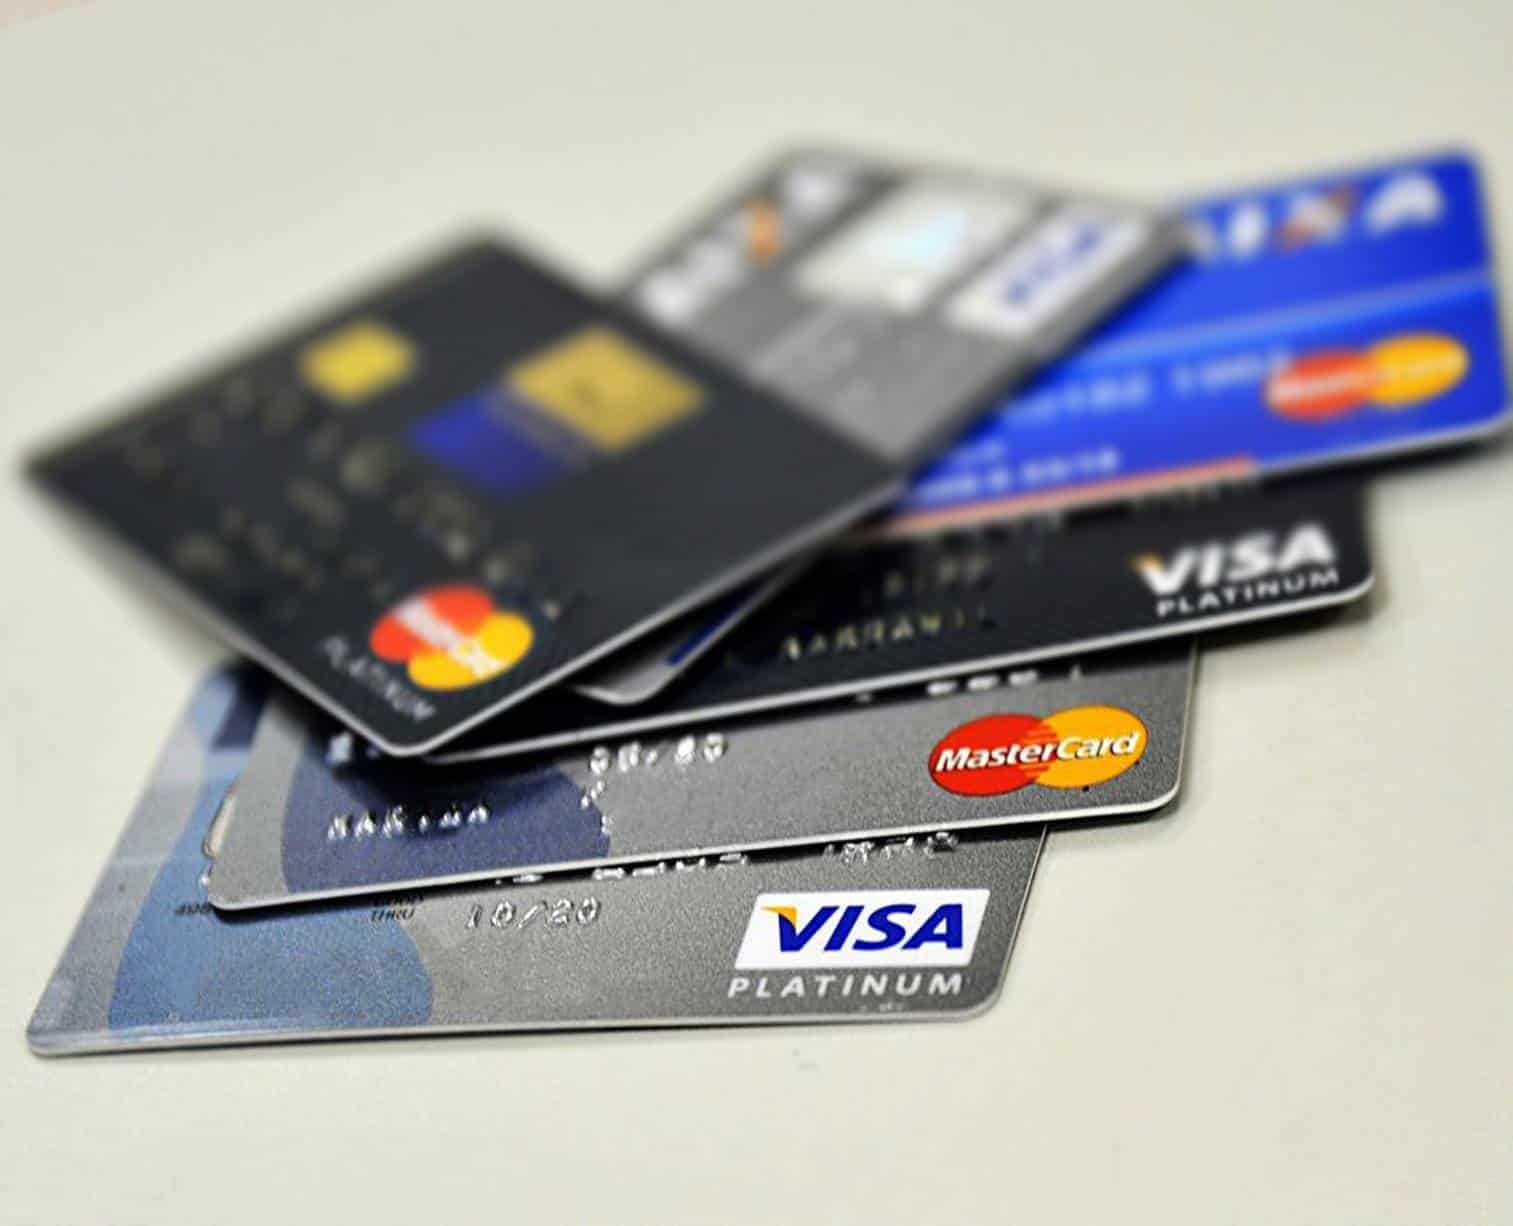 Bancos passam a cobrar dólar do dia da compra com cartão